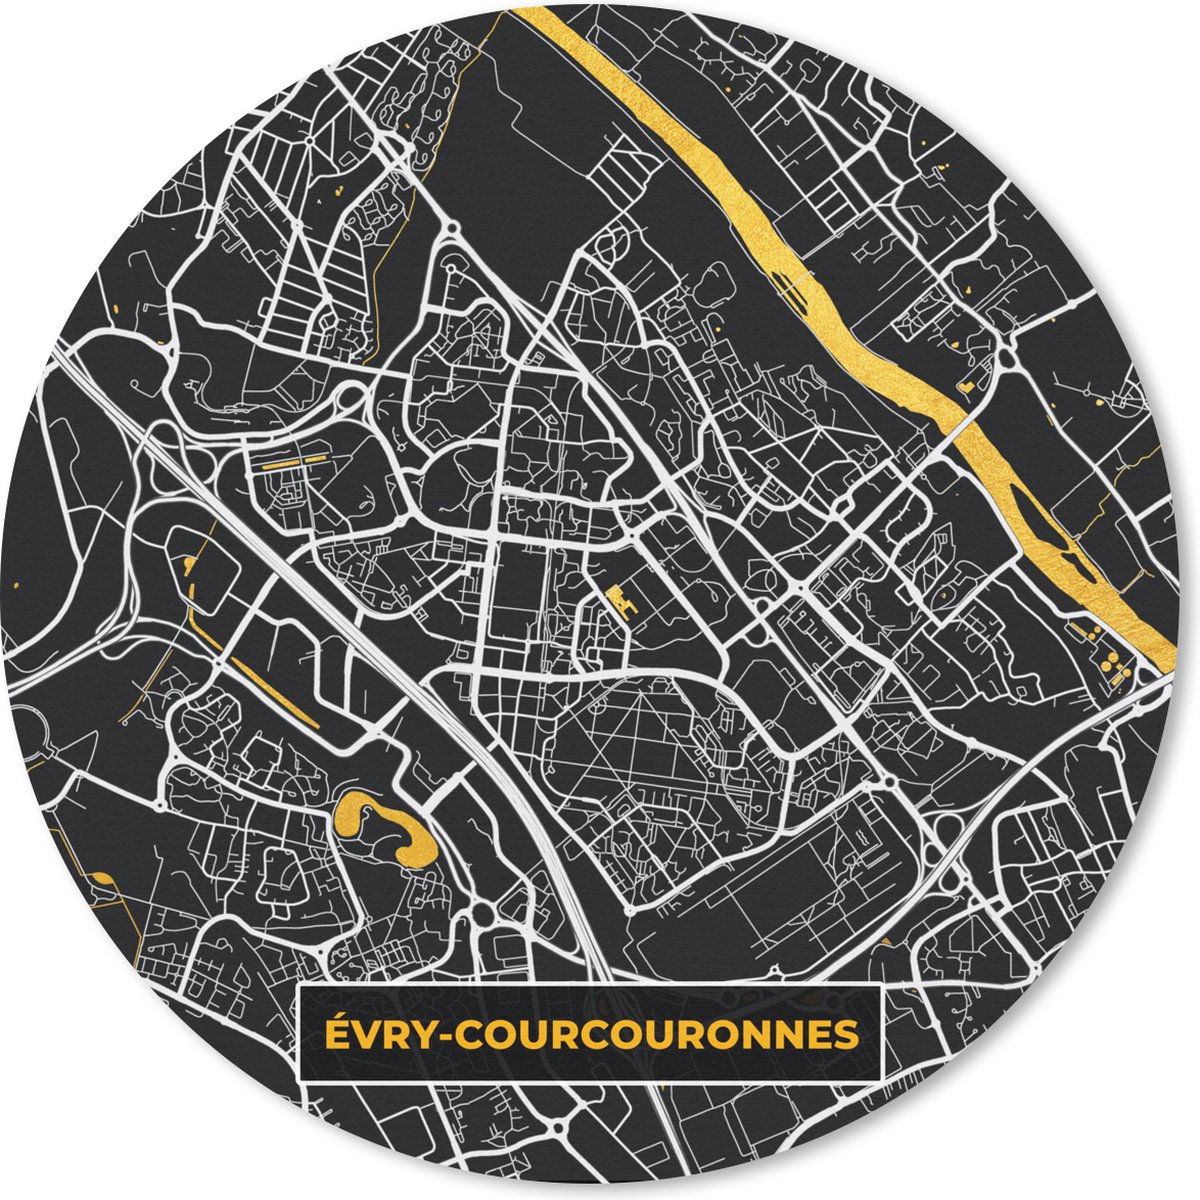 Muismat - Mousepad - Rond - Stadskaart - Plattegrond - Évry-Courcouronnes - Frankrijk - Kaart - 30x30 cm - Ronde muismat